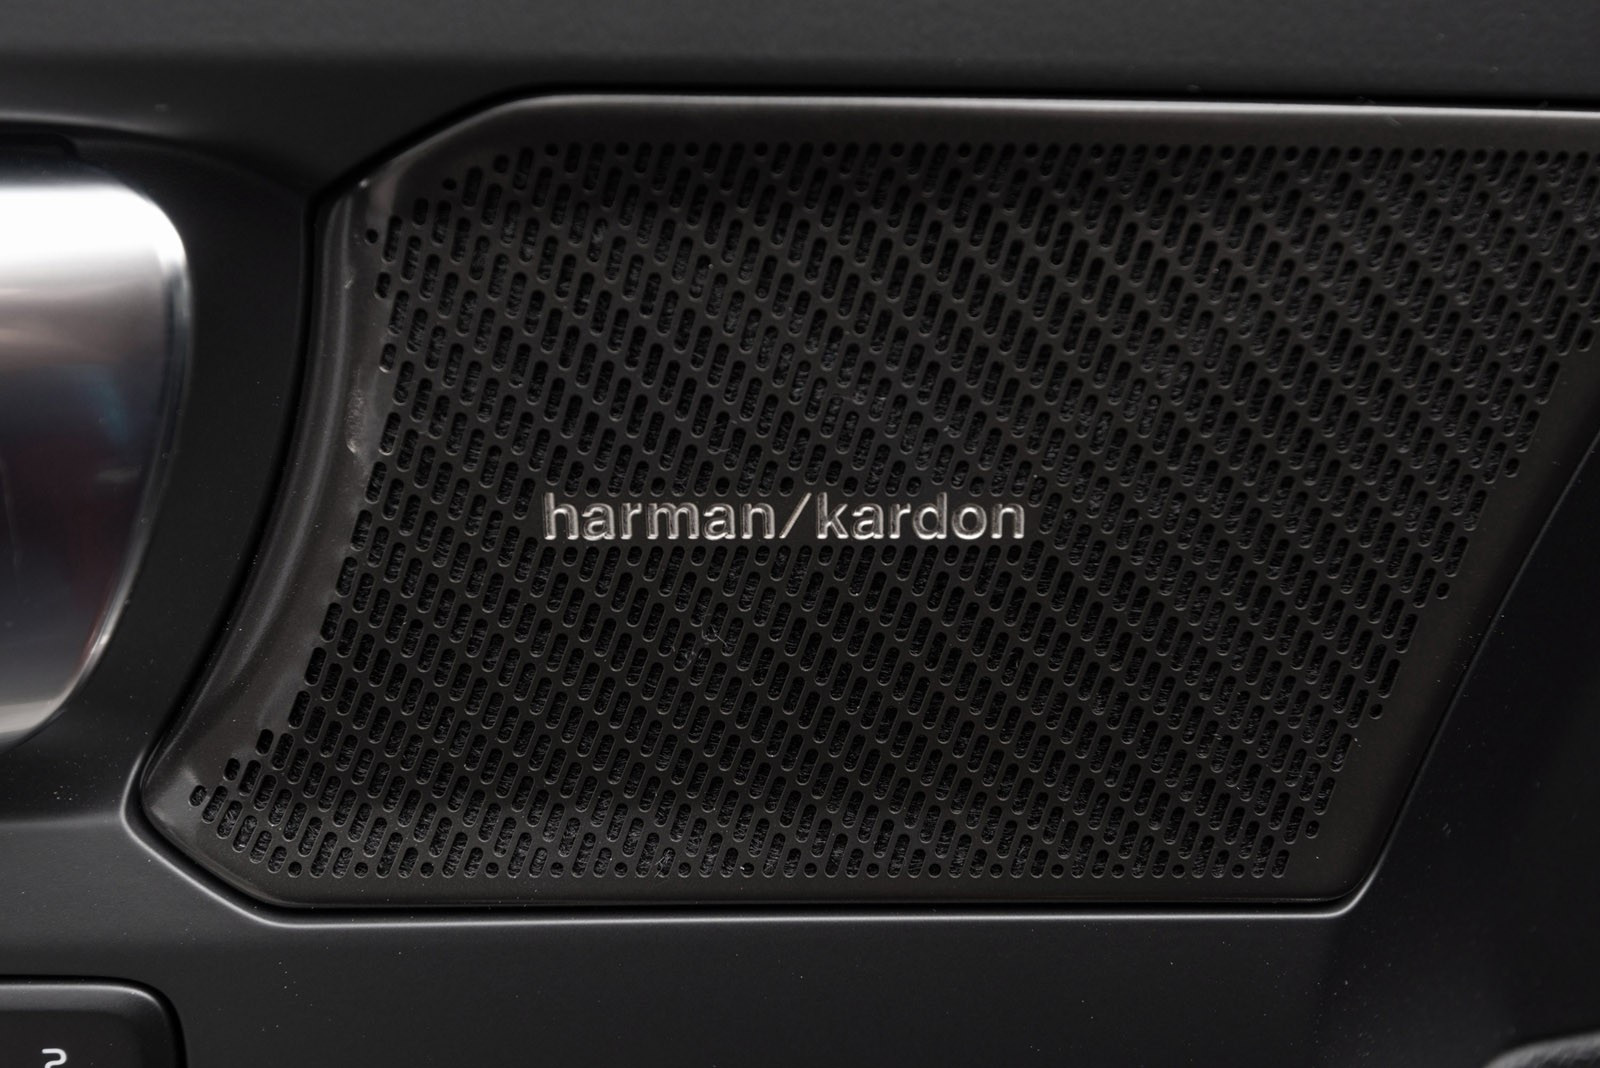 Den flotteste lyden kommer fra hifi-produsenten Harman/Kardon